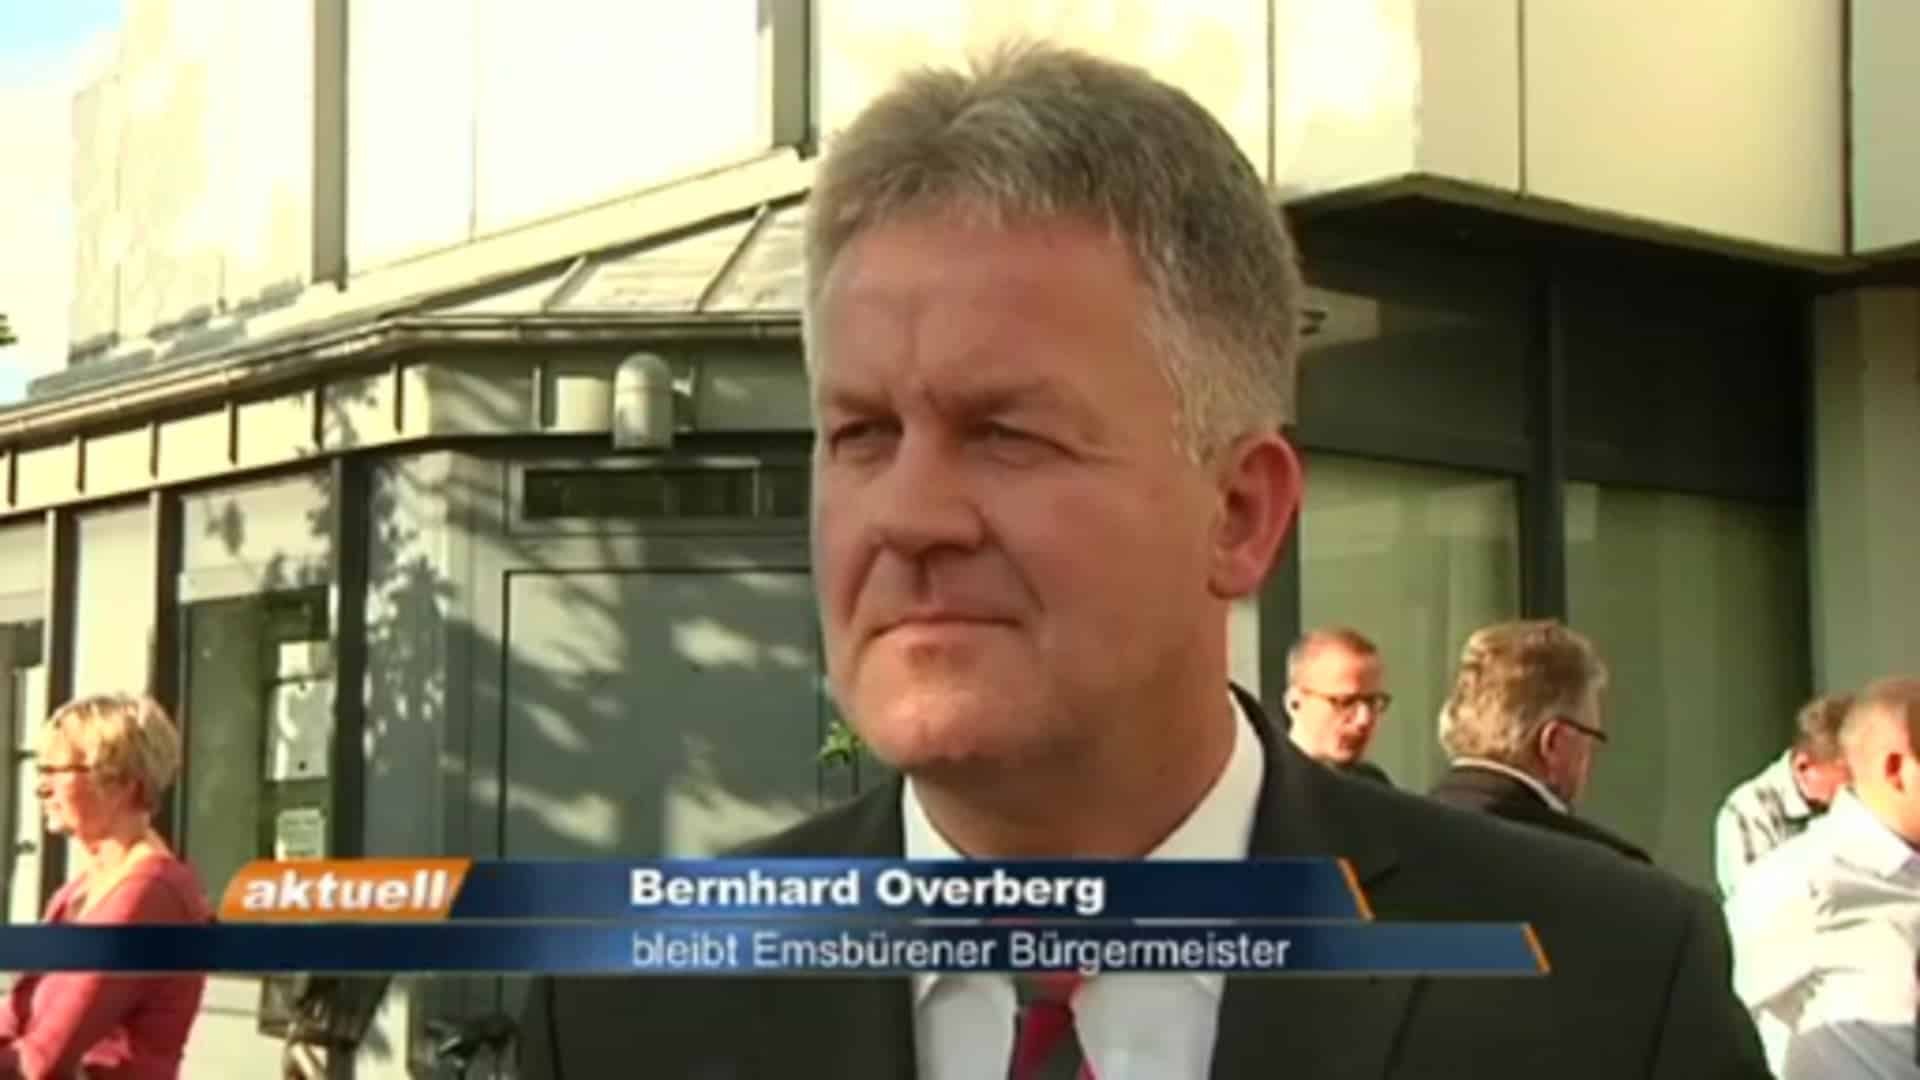 Bürgermeisterwahl Emsbüren - Interview mit Bernhard Overberg